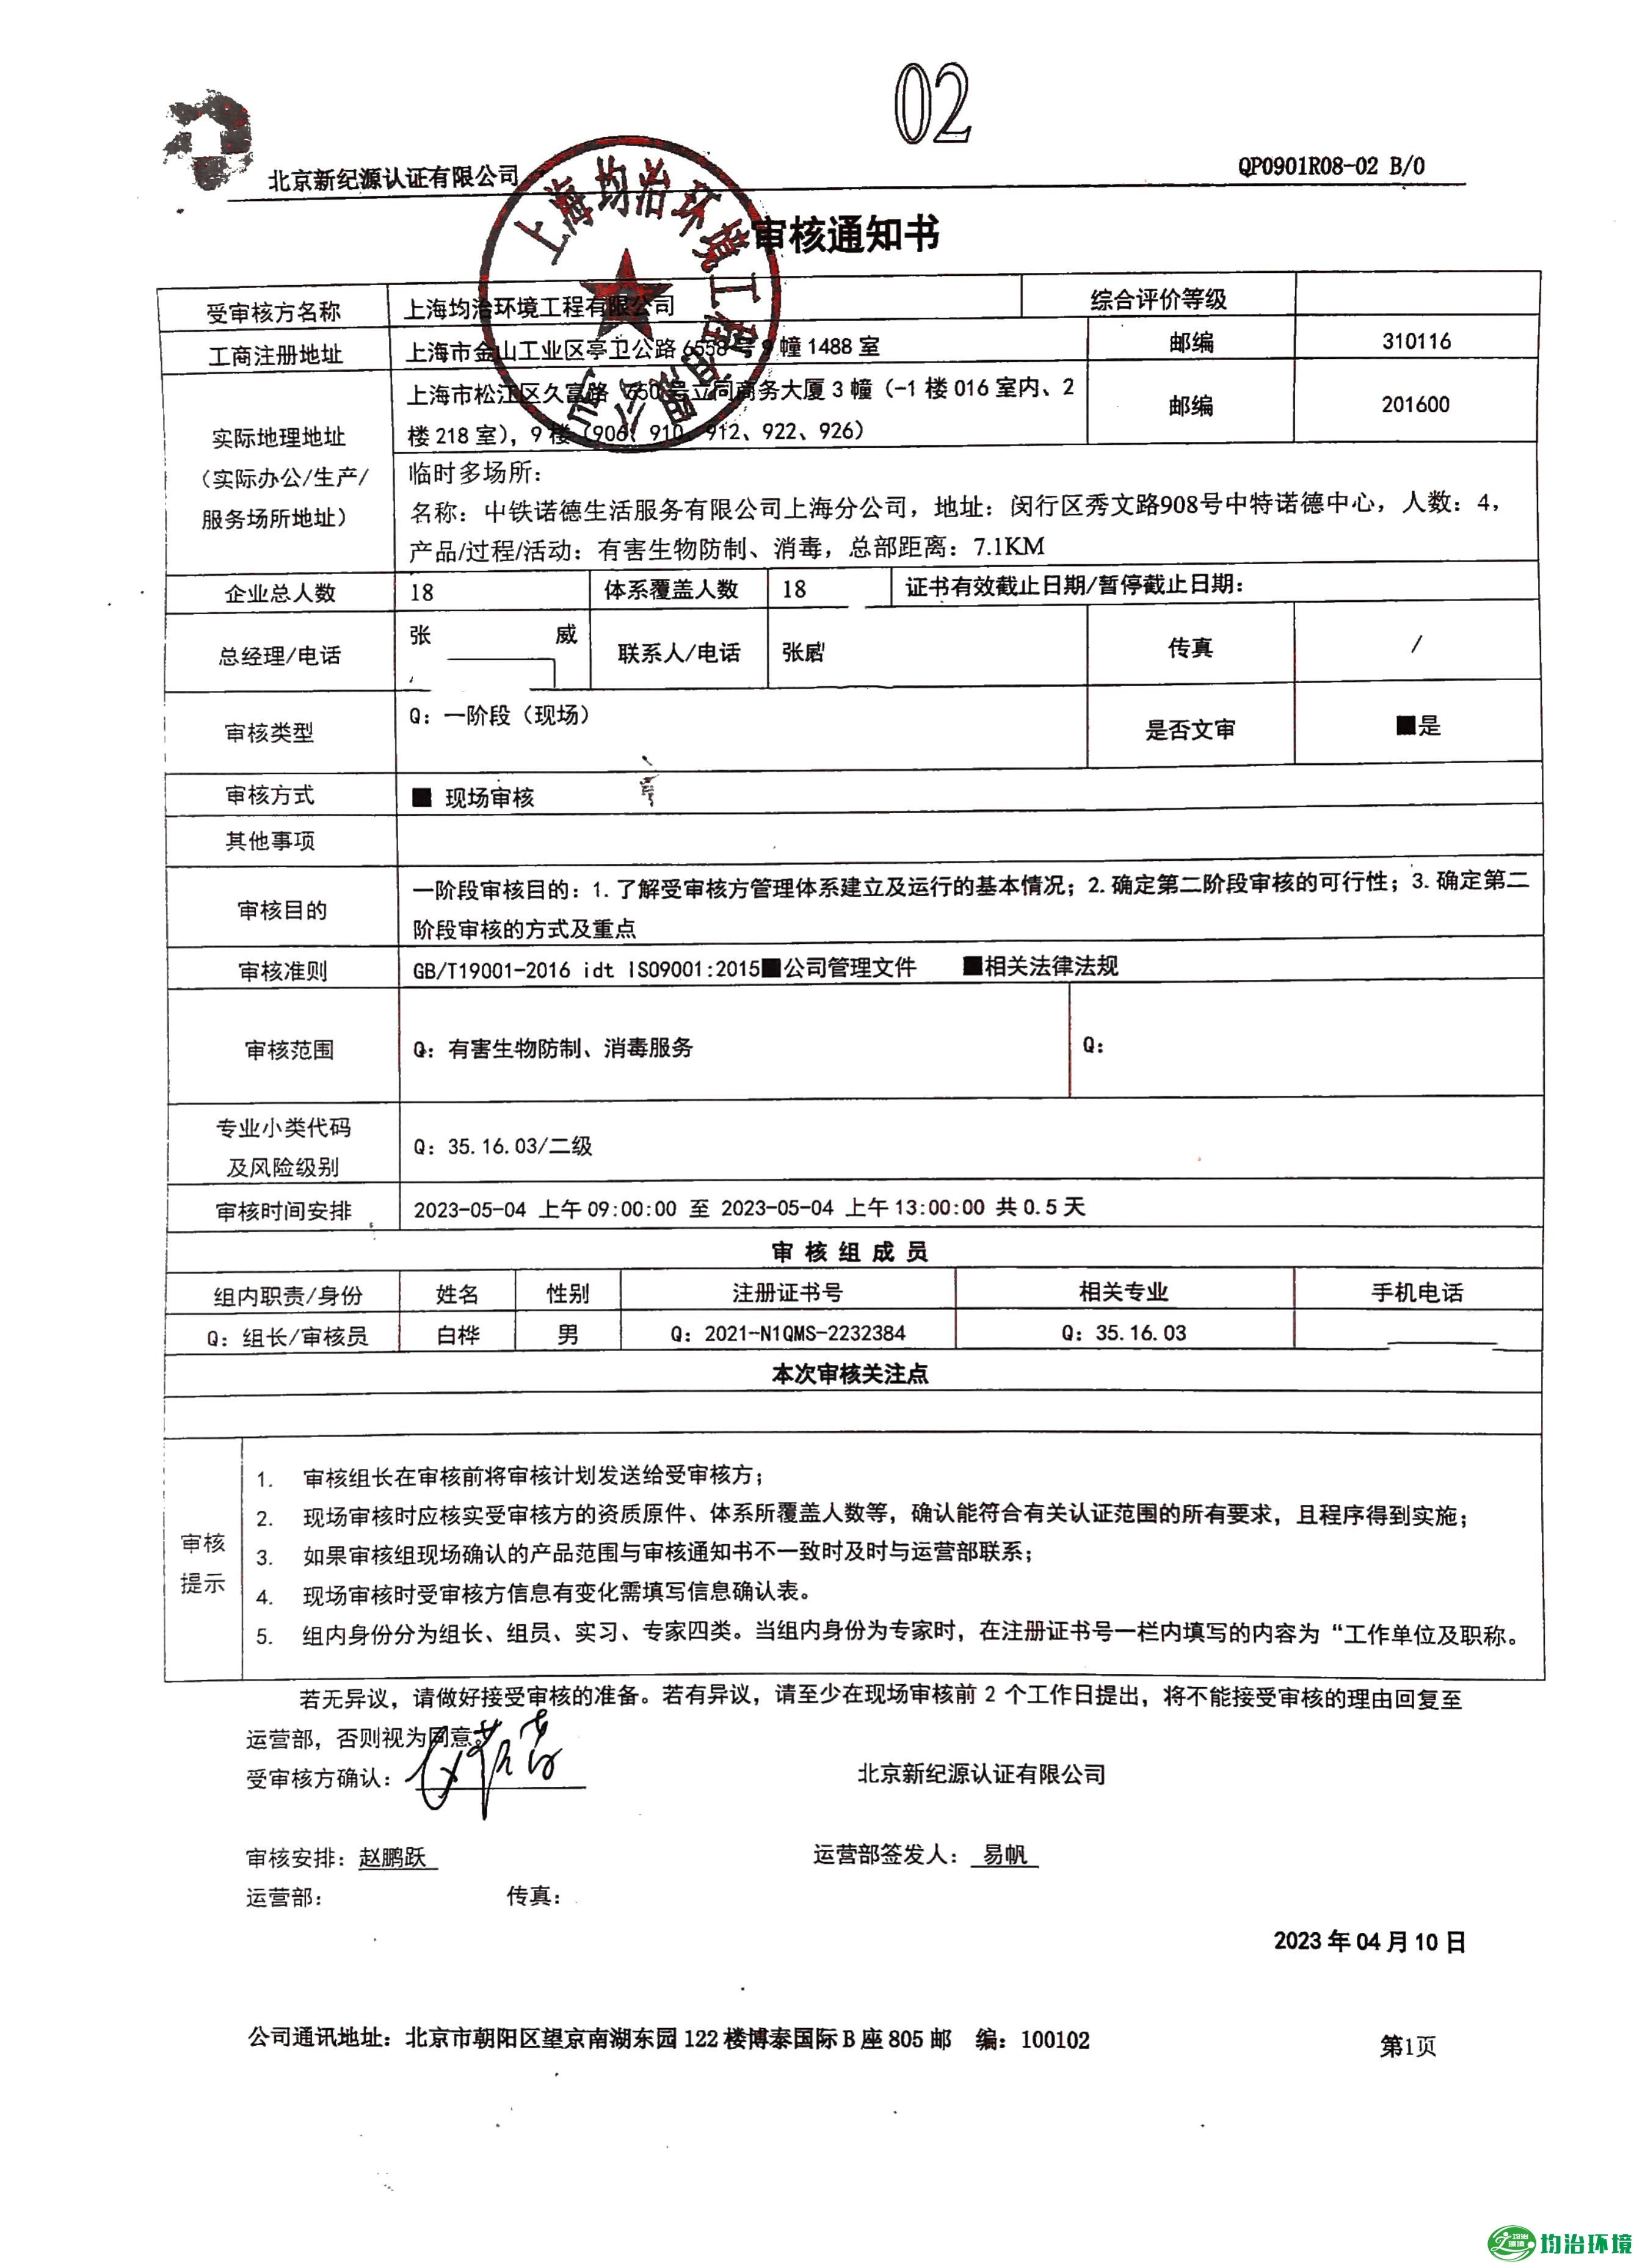 上海均治环境工程有限公司顺利通过质量管理体系认证工作